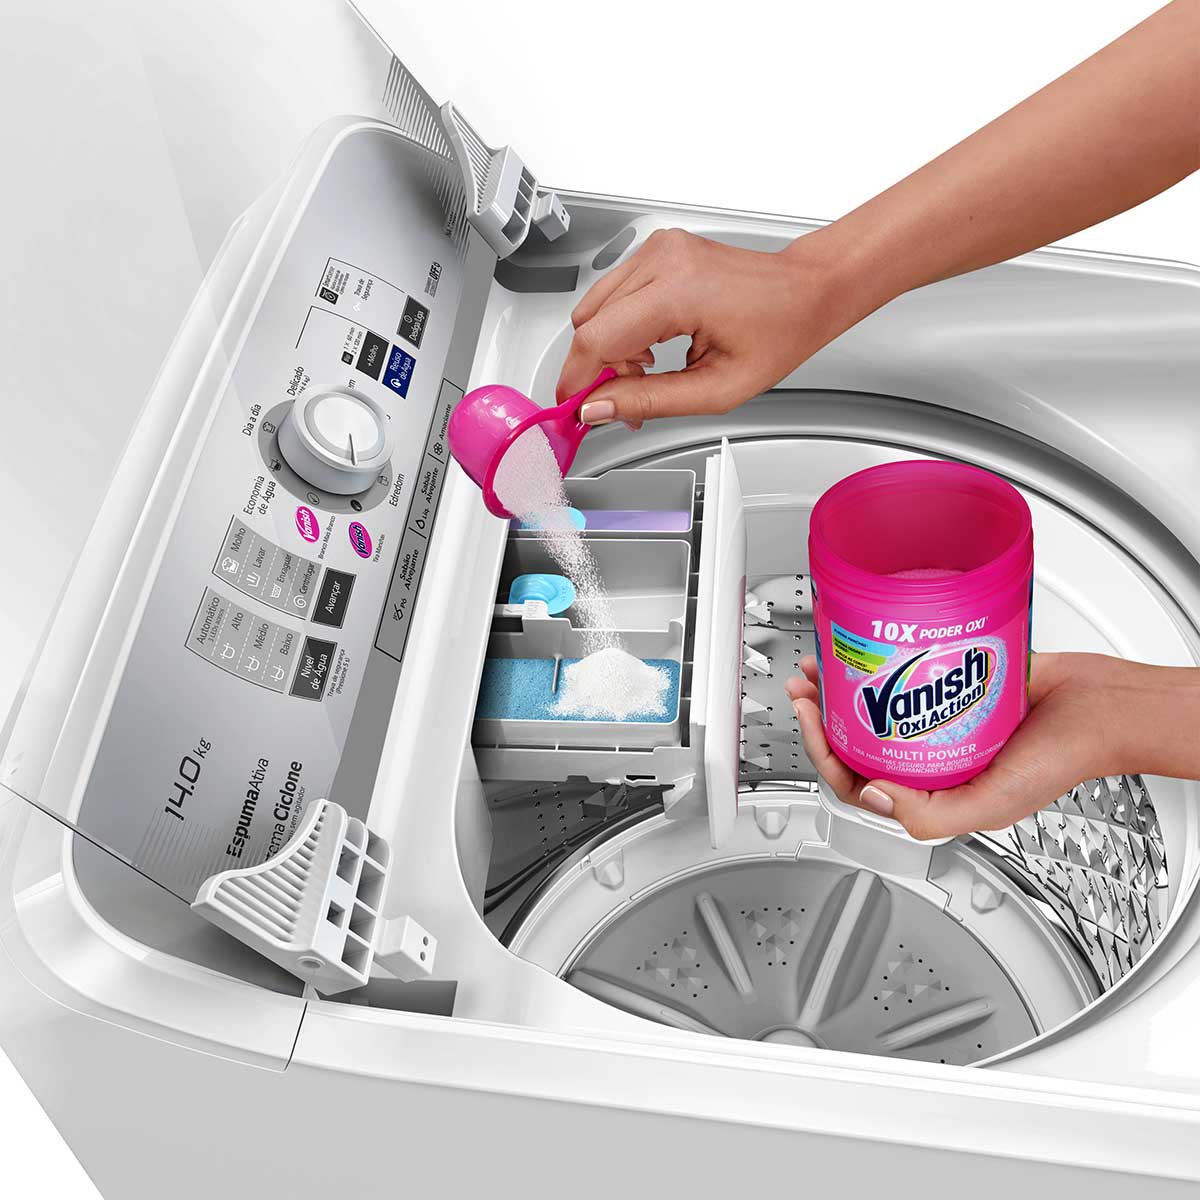 lavadora-panasonic-f140b1w-14kg-b-110v-6.jpg